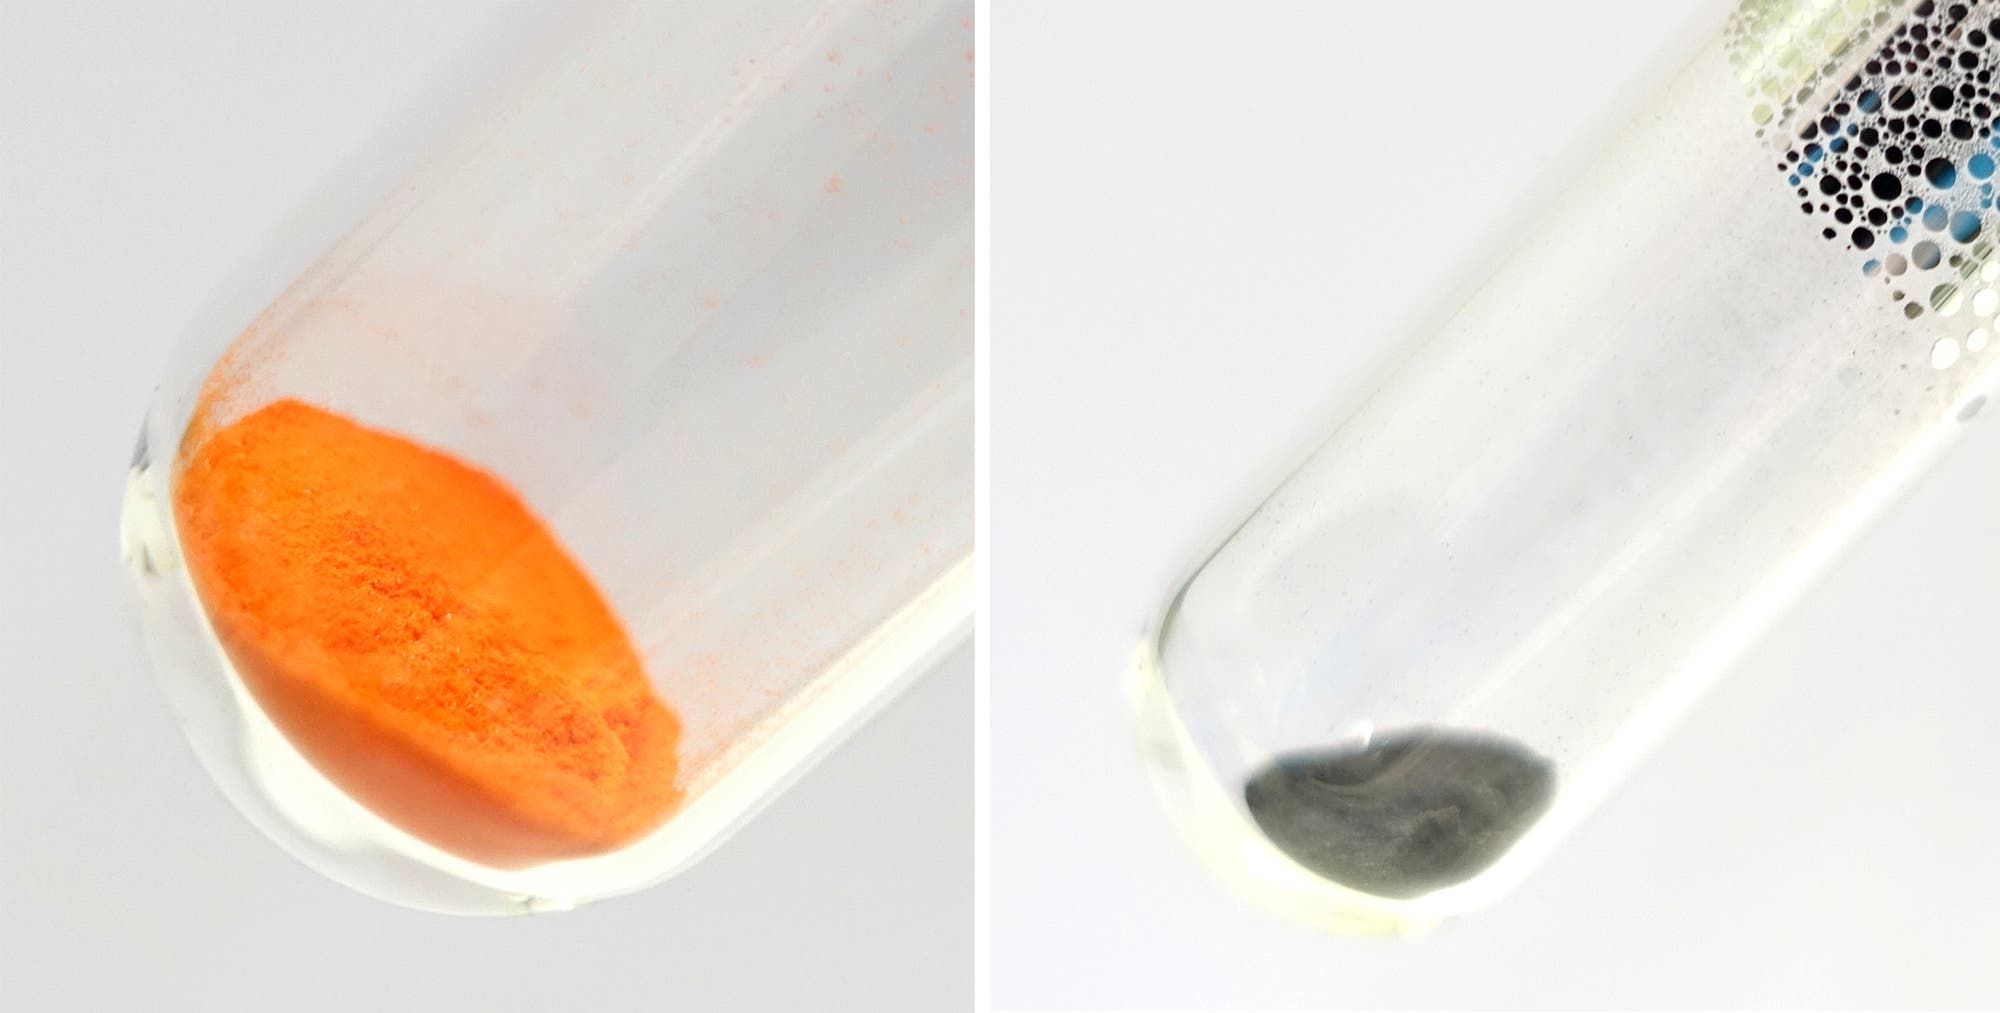 2 Bilder. links oranges Pulver am Boden eine Reagenzglases, rechts das Reagenzglas mit einem grauen Pulver am Boden und ab der Mitte metallisch beschlagenem Rand